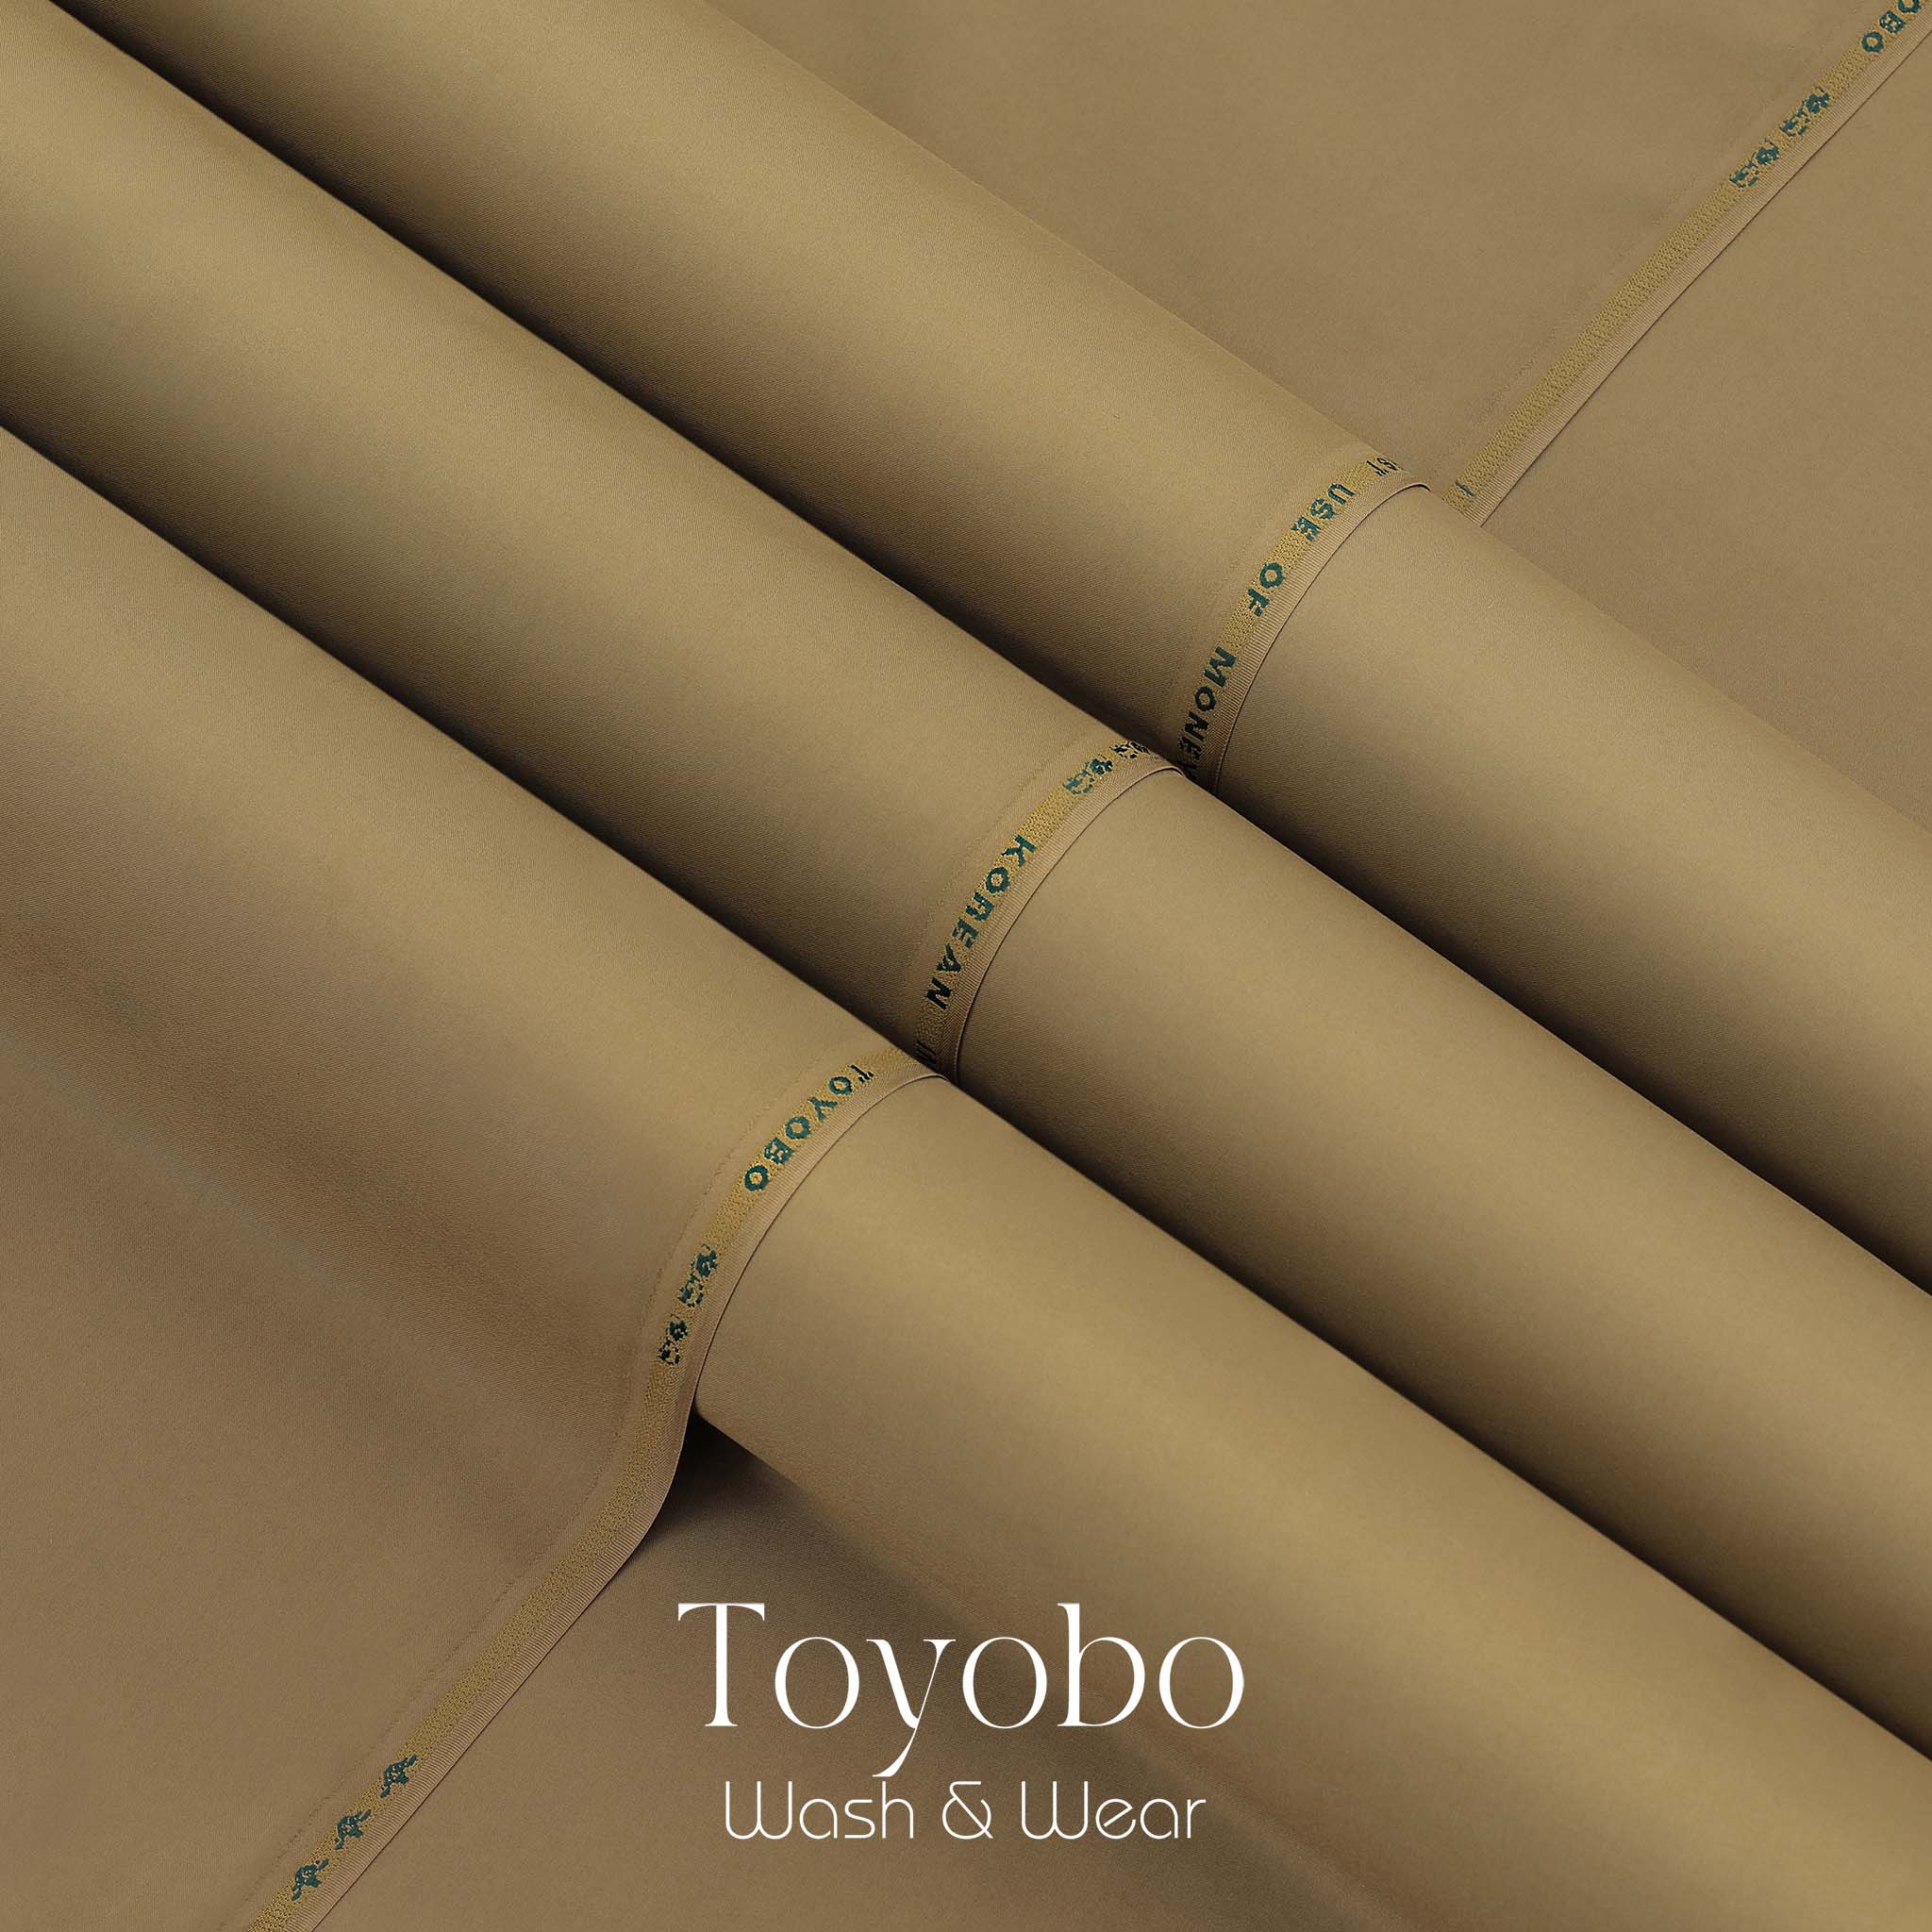 Toyobo Korean